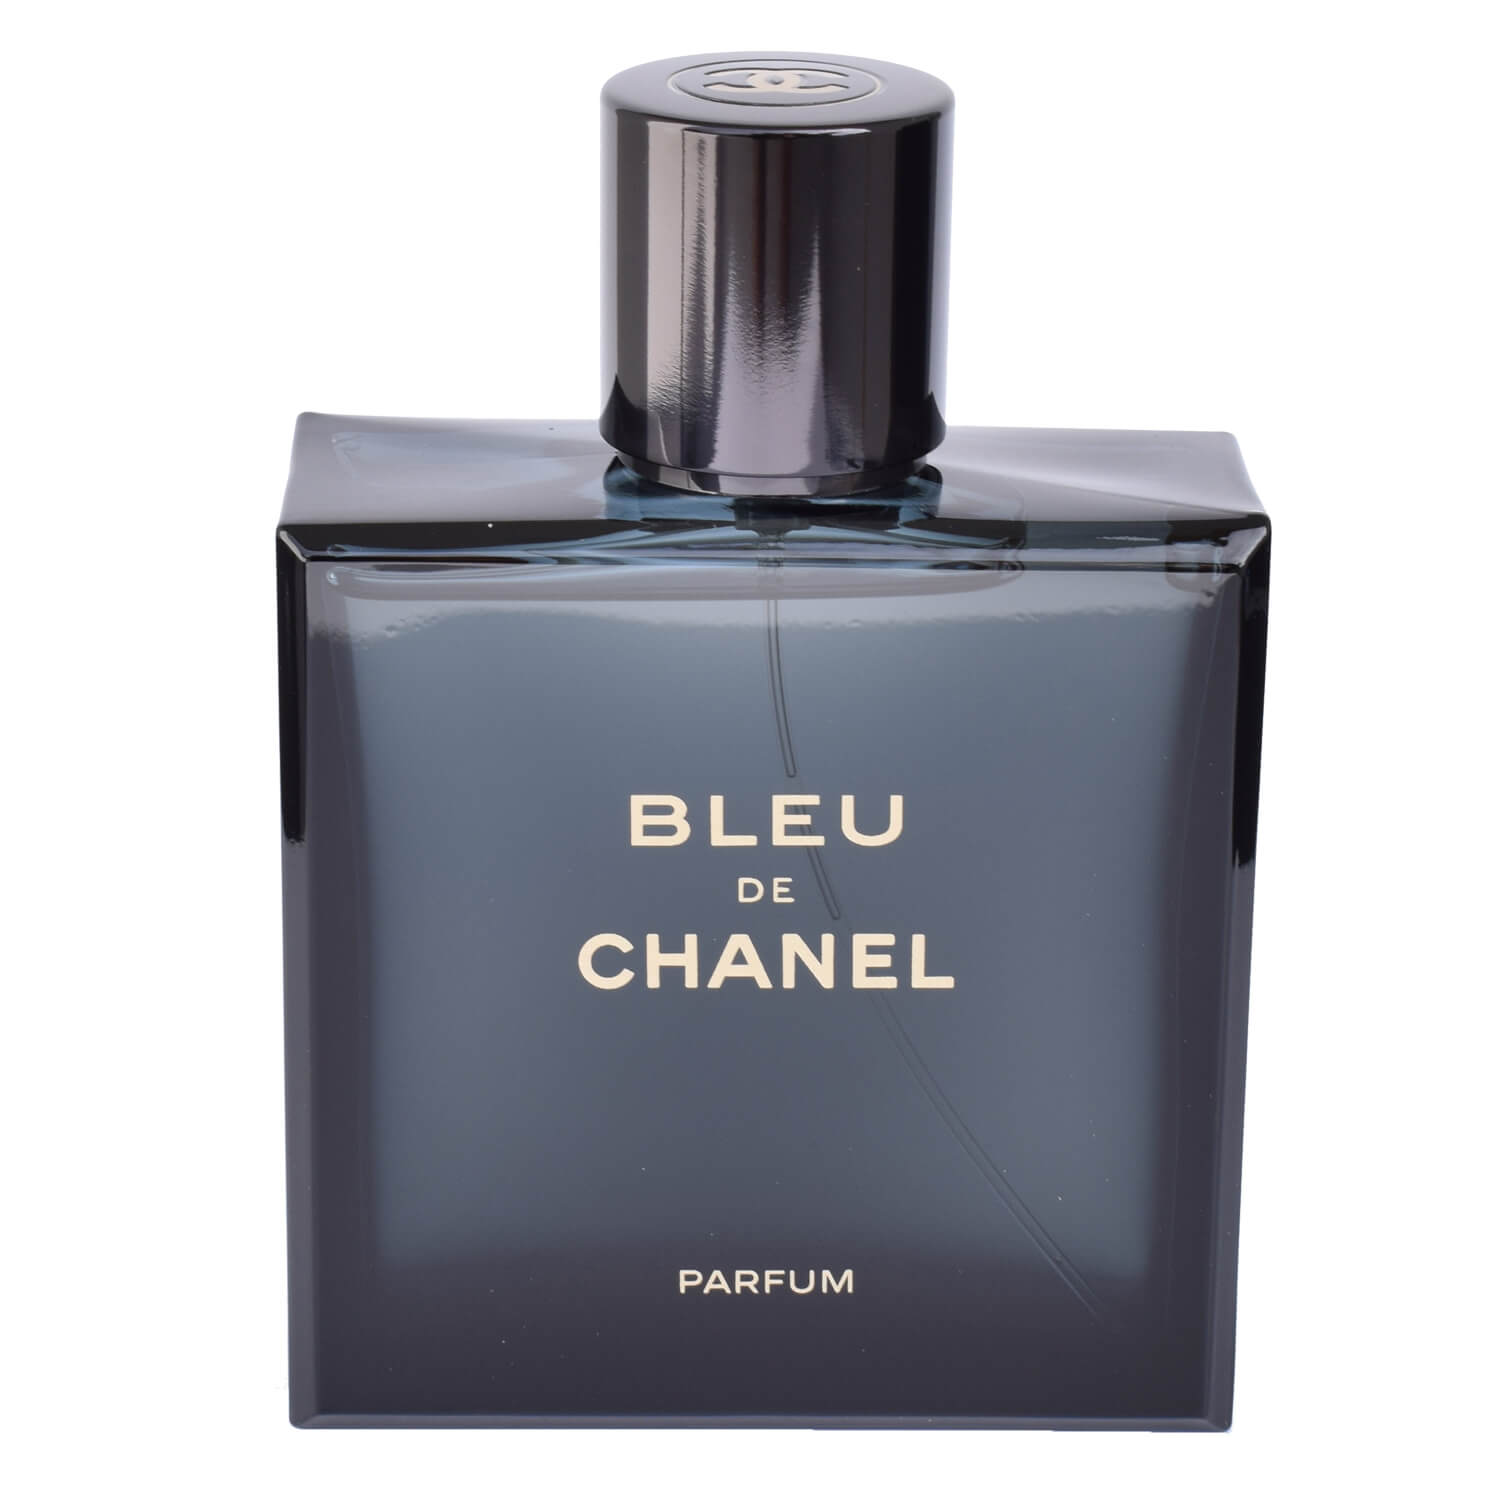 Chanel Bleu de Chanel Parfum 100 ml XL Herren Parfüm Duft Spay